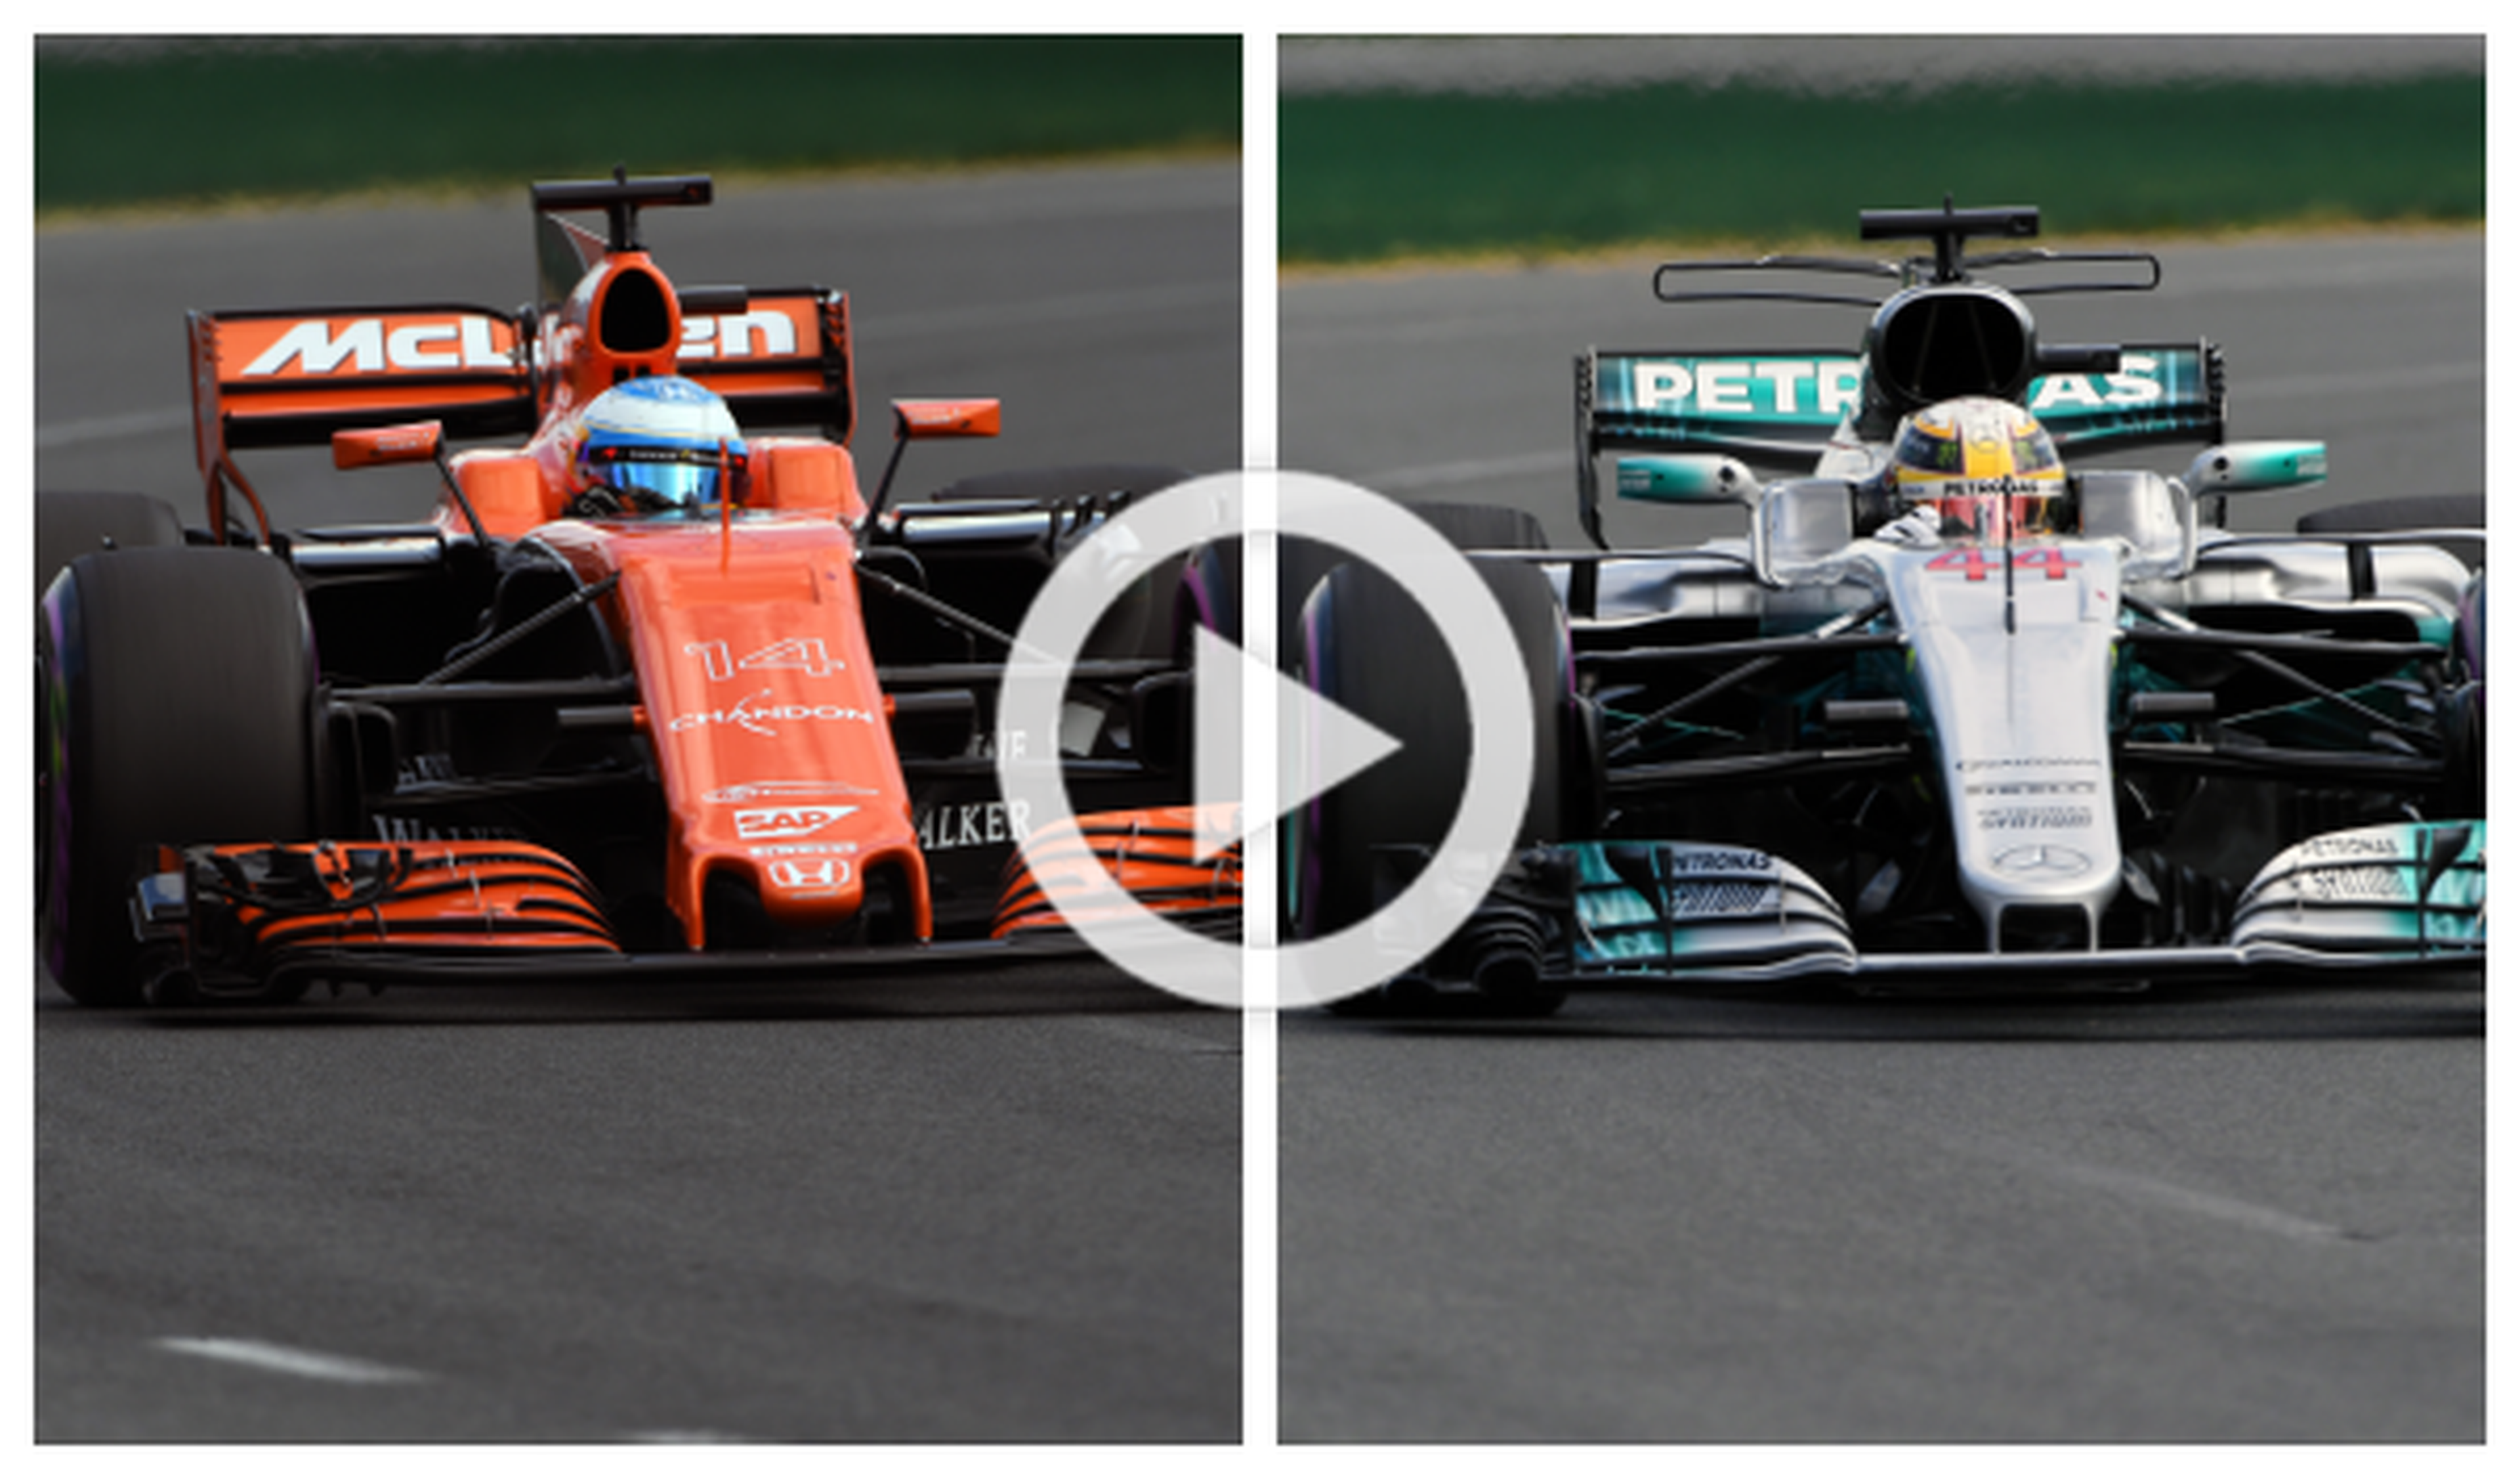 ¿En qué se diferencian el McLaren de Alonso y el Mercedes?